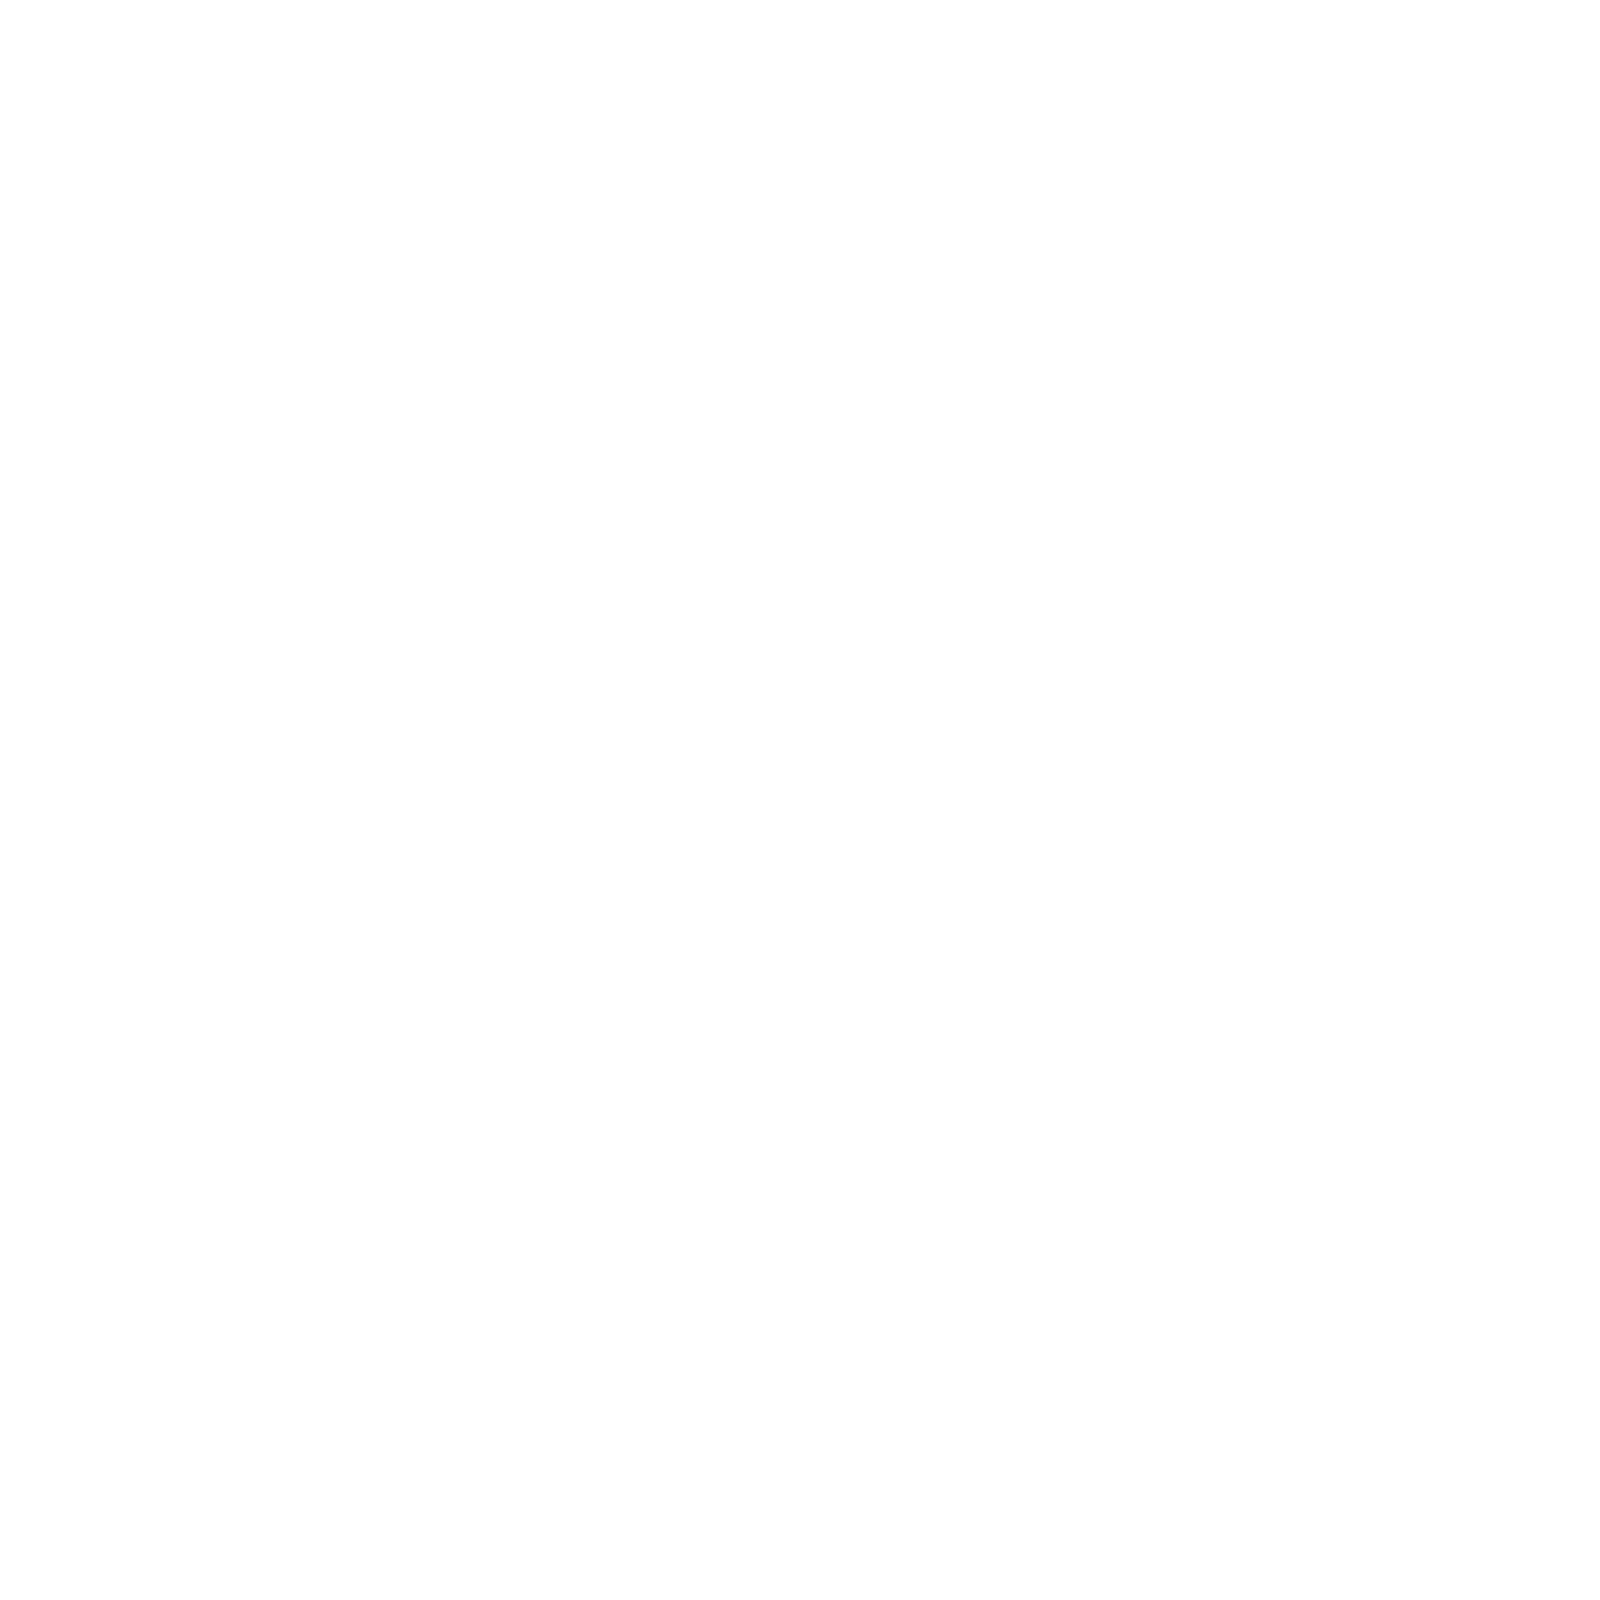 THE SxPLAY(菅原紗由理)、山田悠介の最新小説「僕はロボットごしの君に恋をする」アニメPVテーマソングがリリース決定！アニメPV(short.ver)公開サムネイル画像!